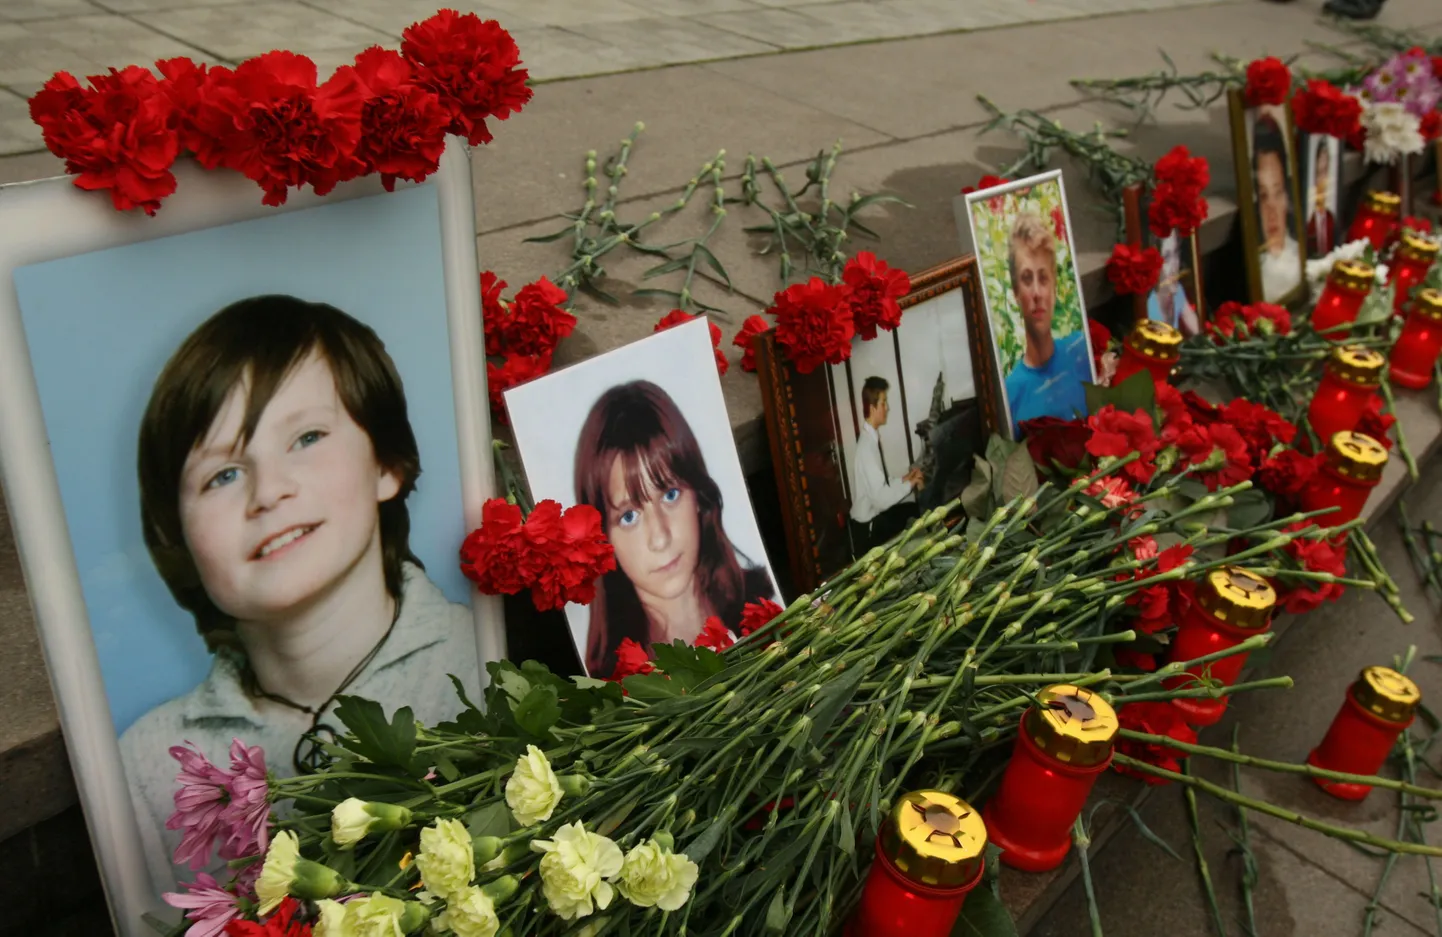 Каждую годовщину захвата «Норд-Оста» на Дубровке выстраиваются очереди людей, желающих положить цветы к фотографиям заложников, которые не дожили до освобождения